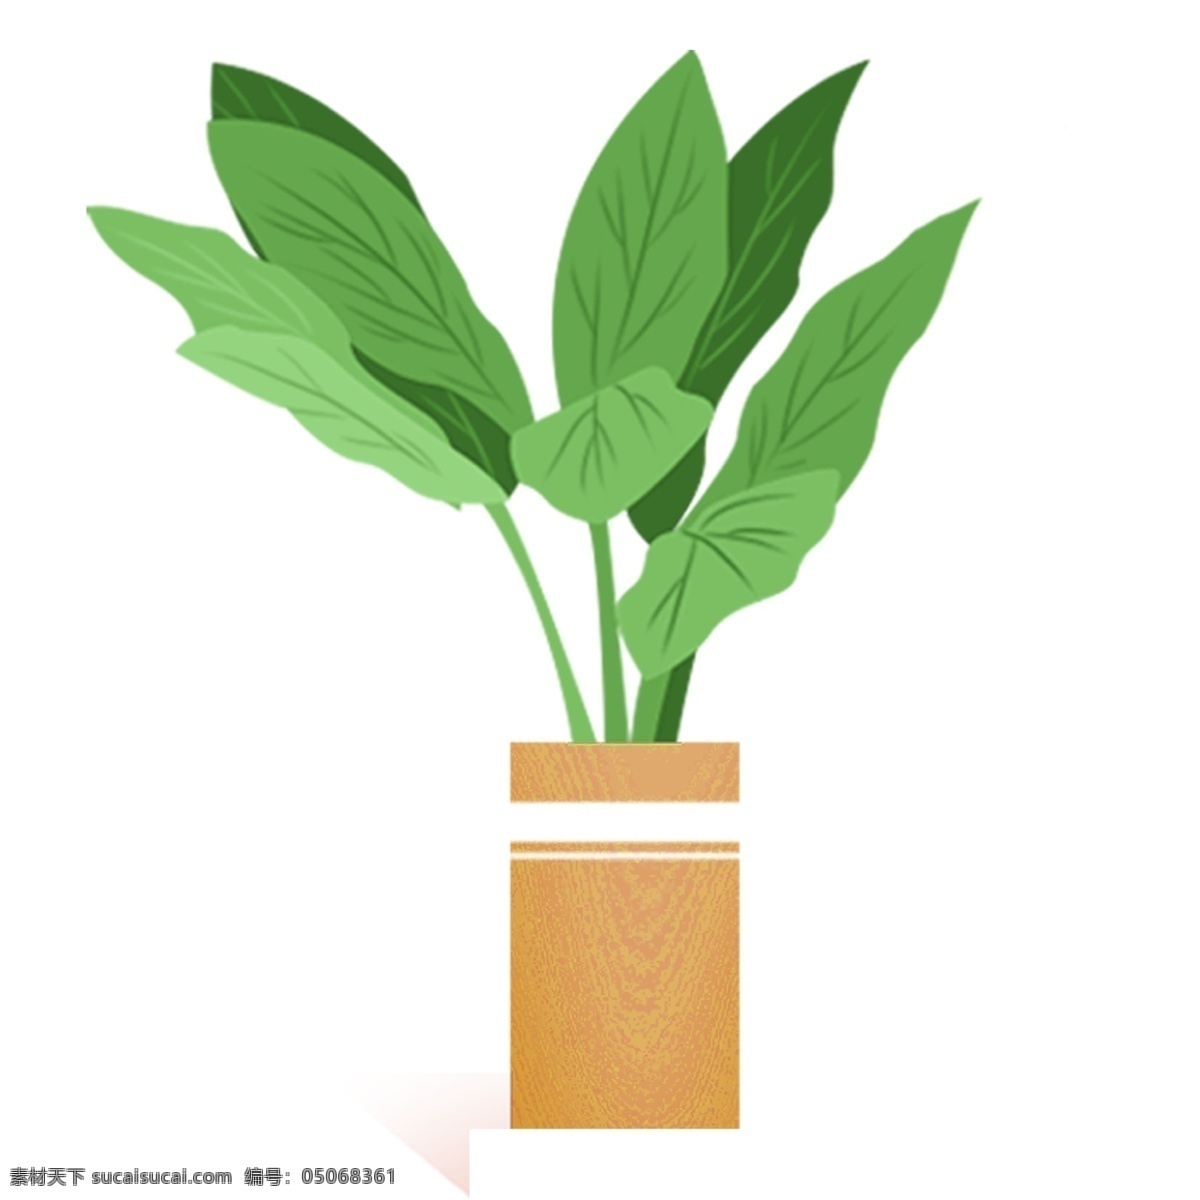 绿色 盆栽 植物 插画 植物树叶 卡通 彩色 小清新 创意 手绘 绘画元素 现代 简约 装饰 图案